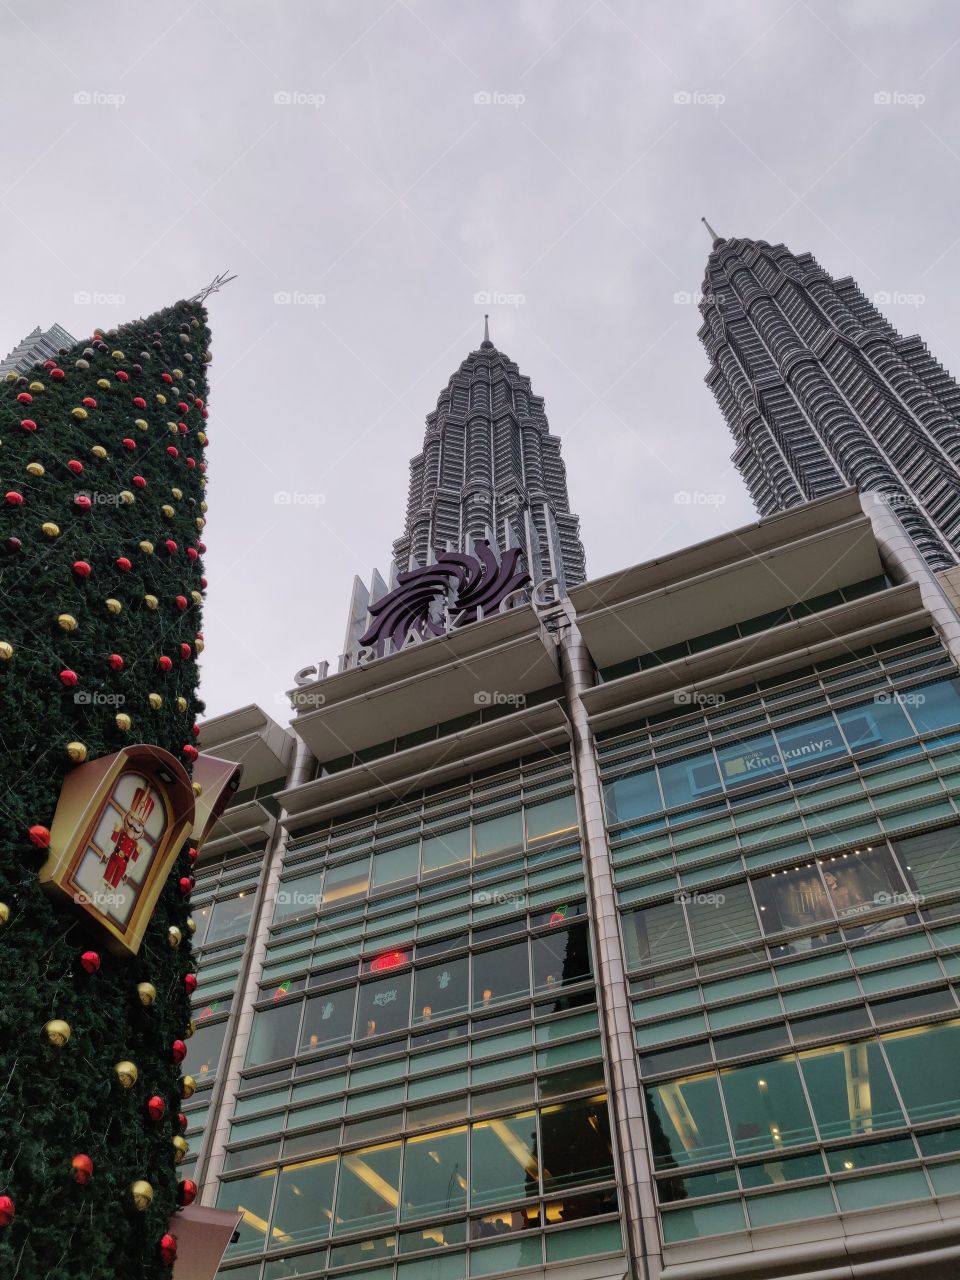 KLCC Petronas twin tower with Christmas tree